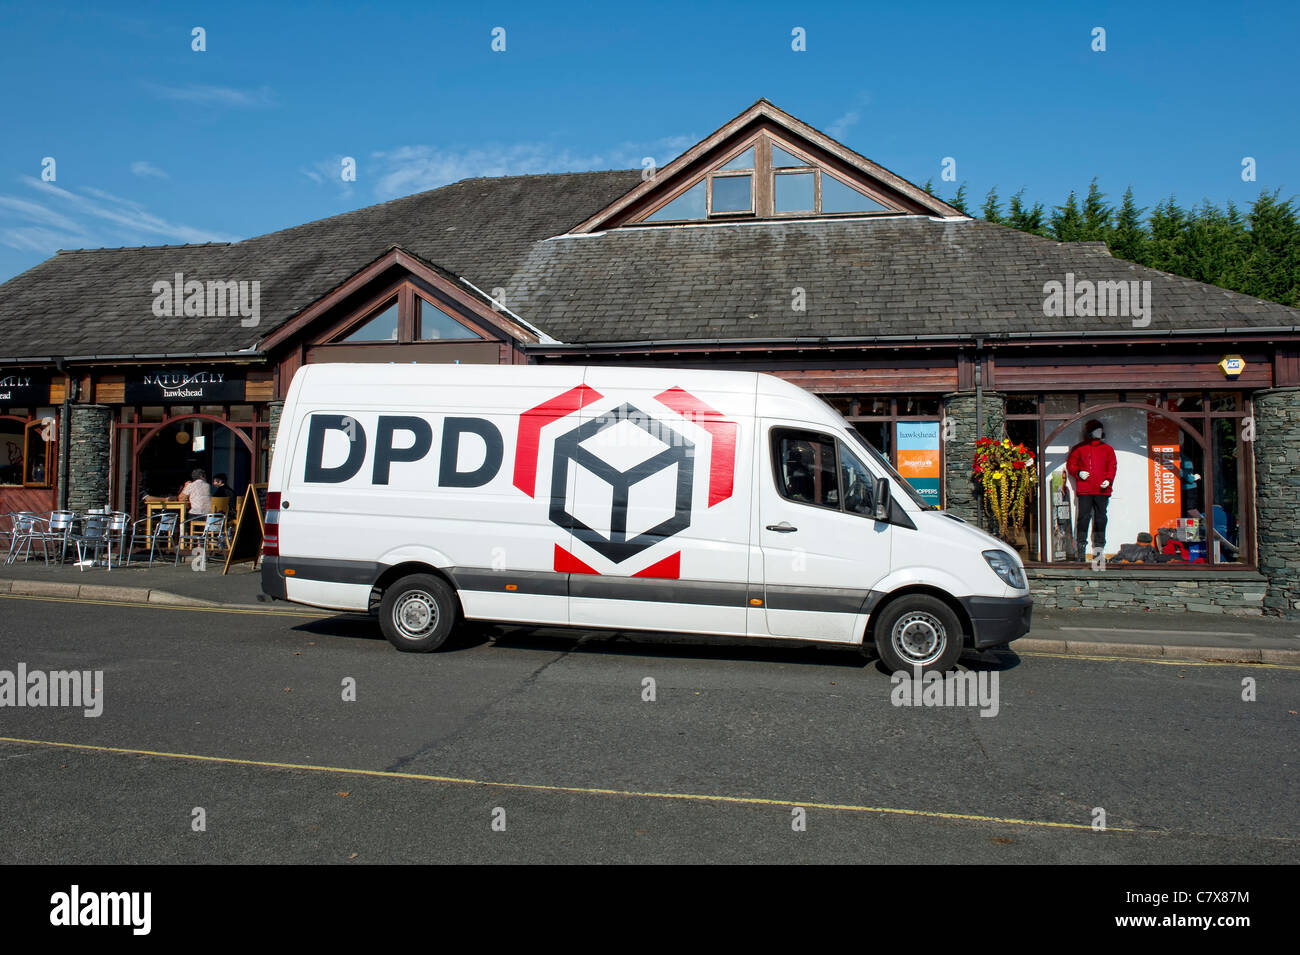 DPD Paket-Lieferwagen vor einem Geschäft in der Stadt Hawkshead in Cumbria,  England Stockfotografie - Alamy